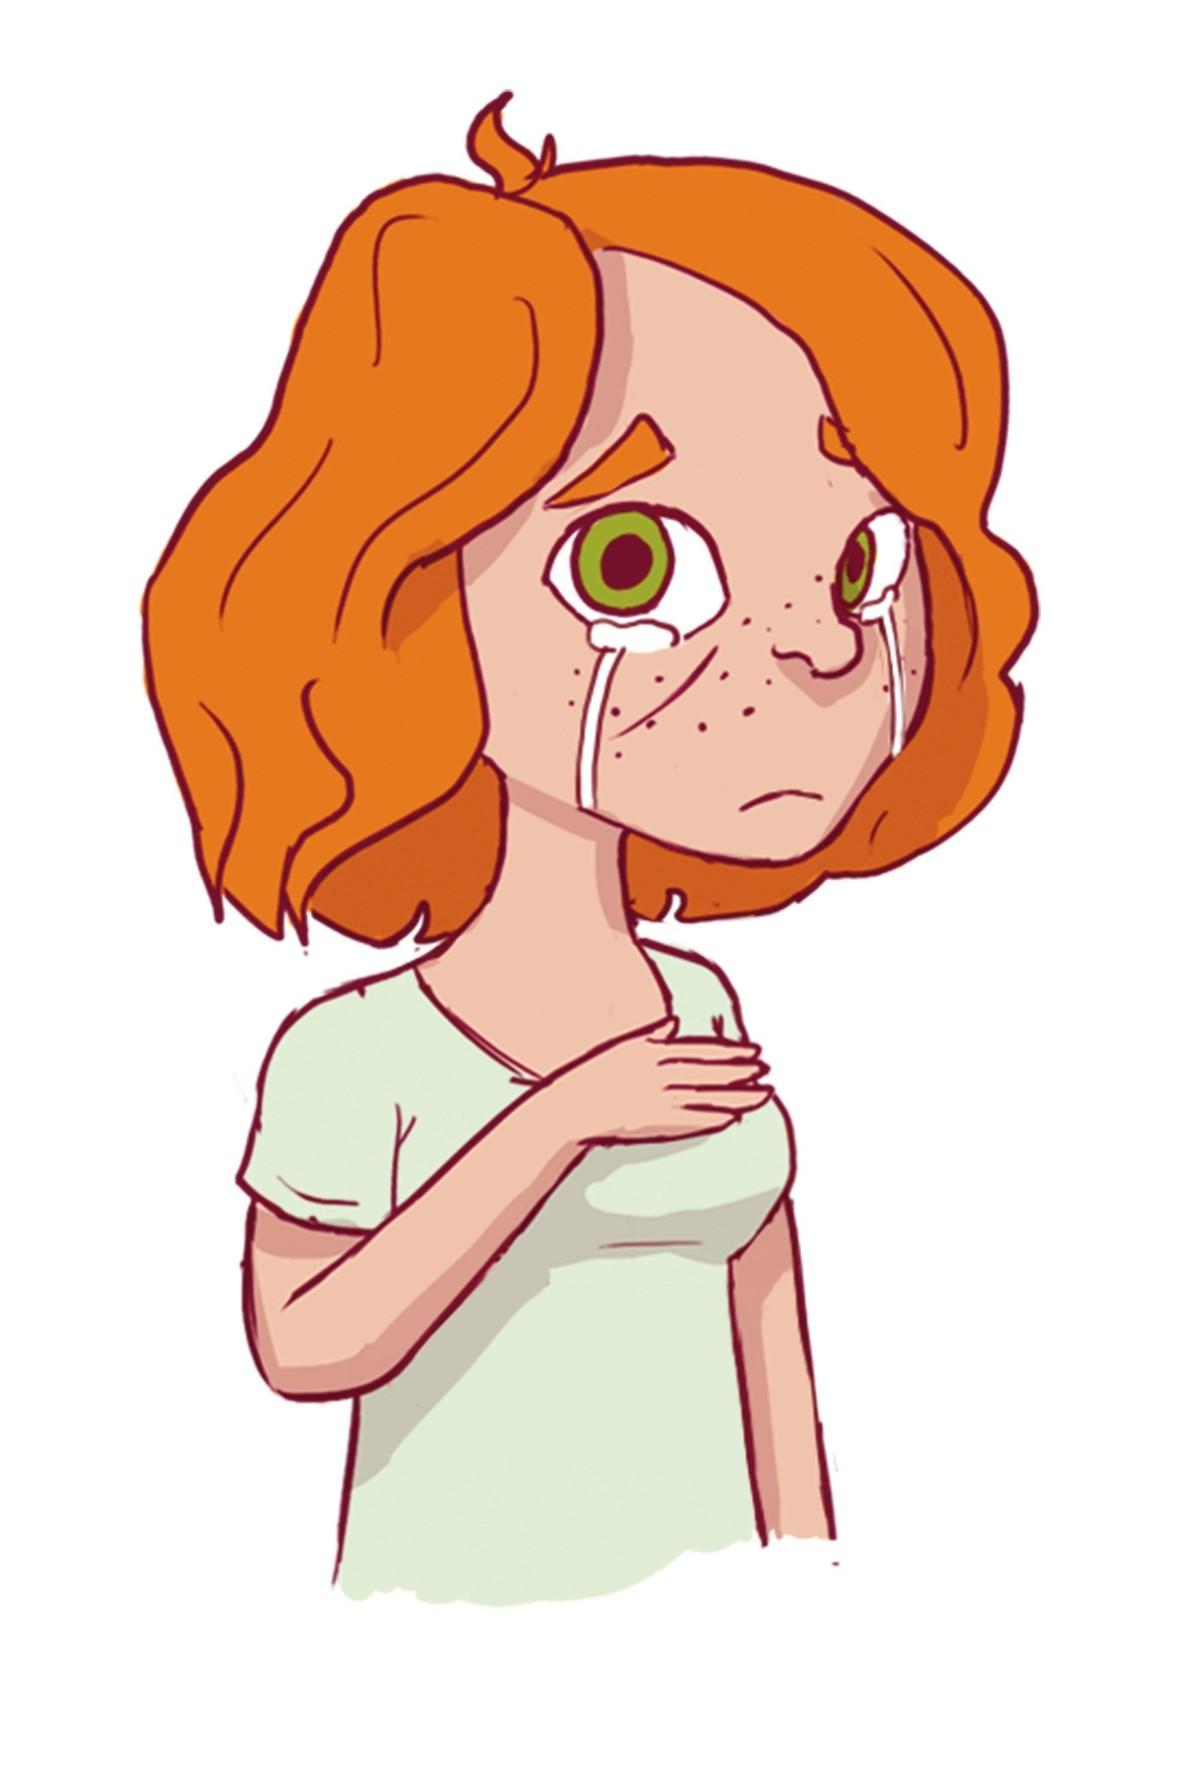 A sad ginger girl